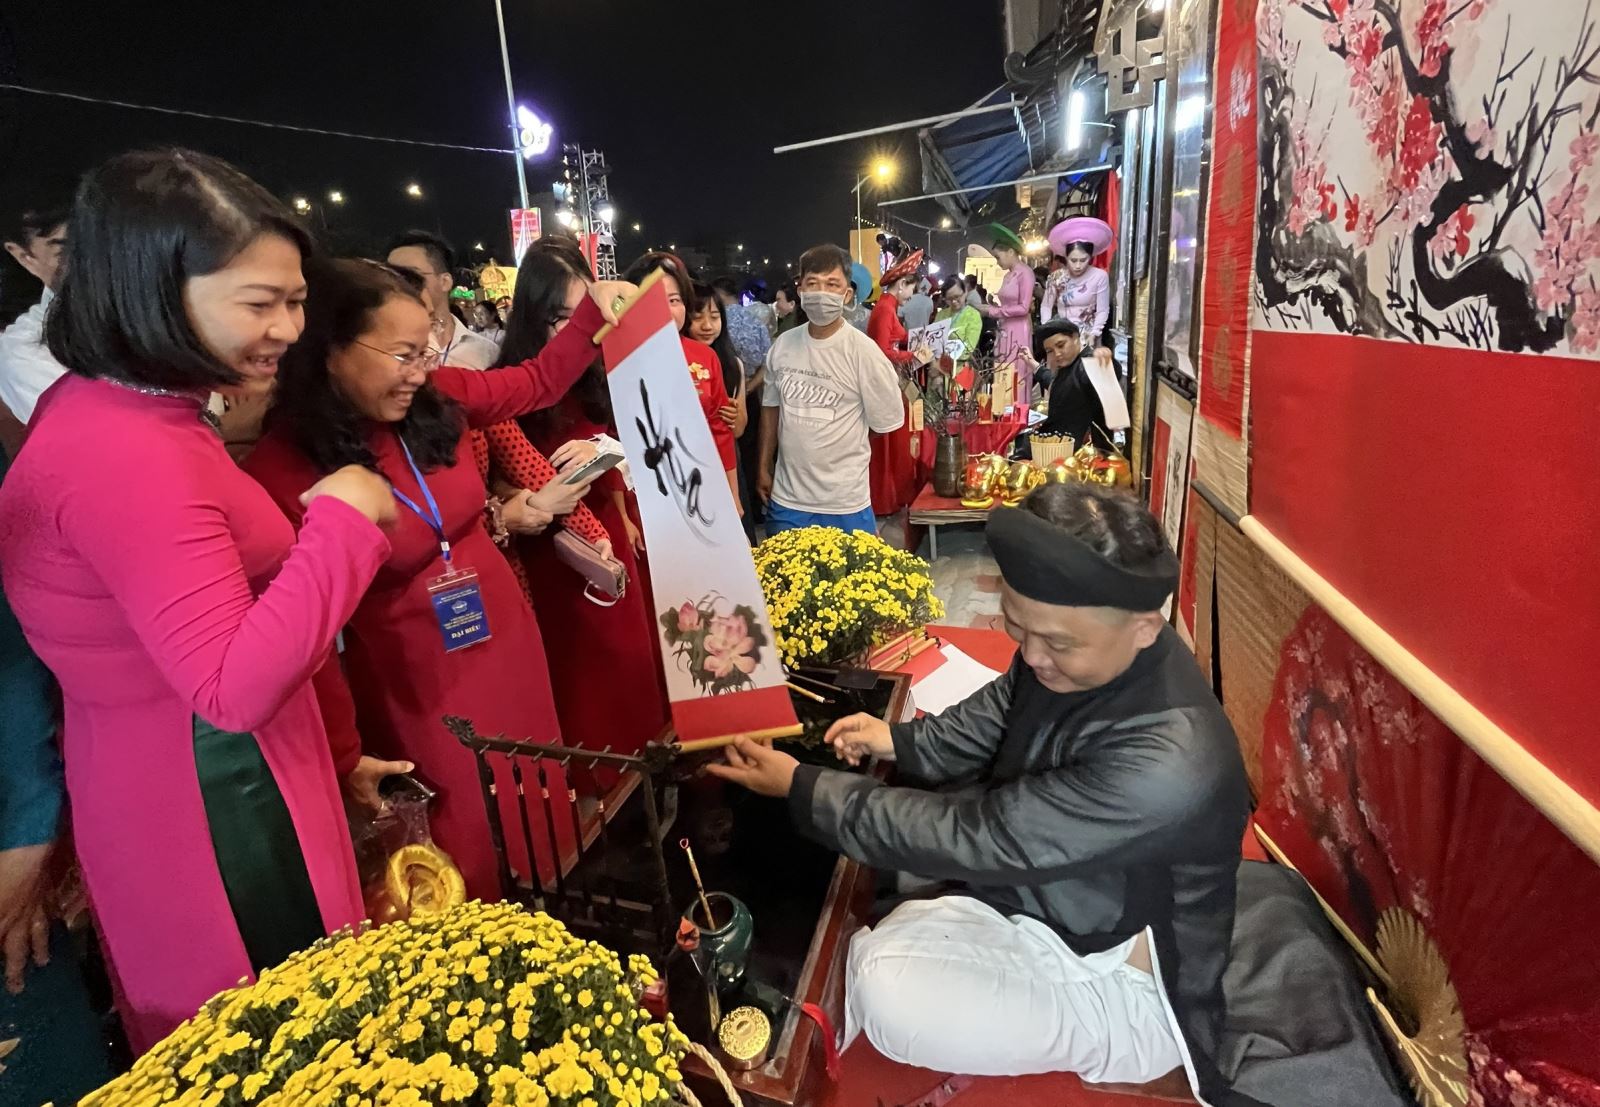 TP Hồ Chí Minh: Khai mạc Hội hoa Xuân Tao Đàn và chợ hoa Xuân "Trên bến dưới thuyền"